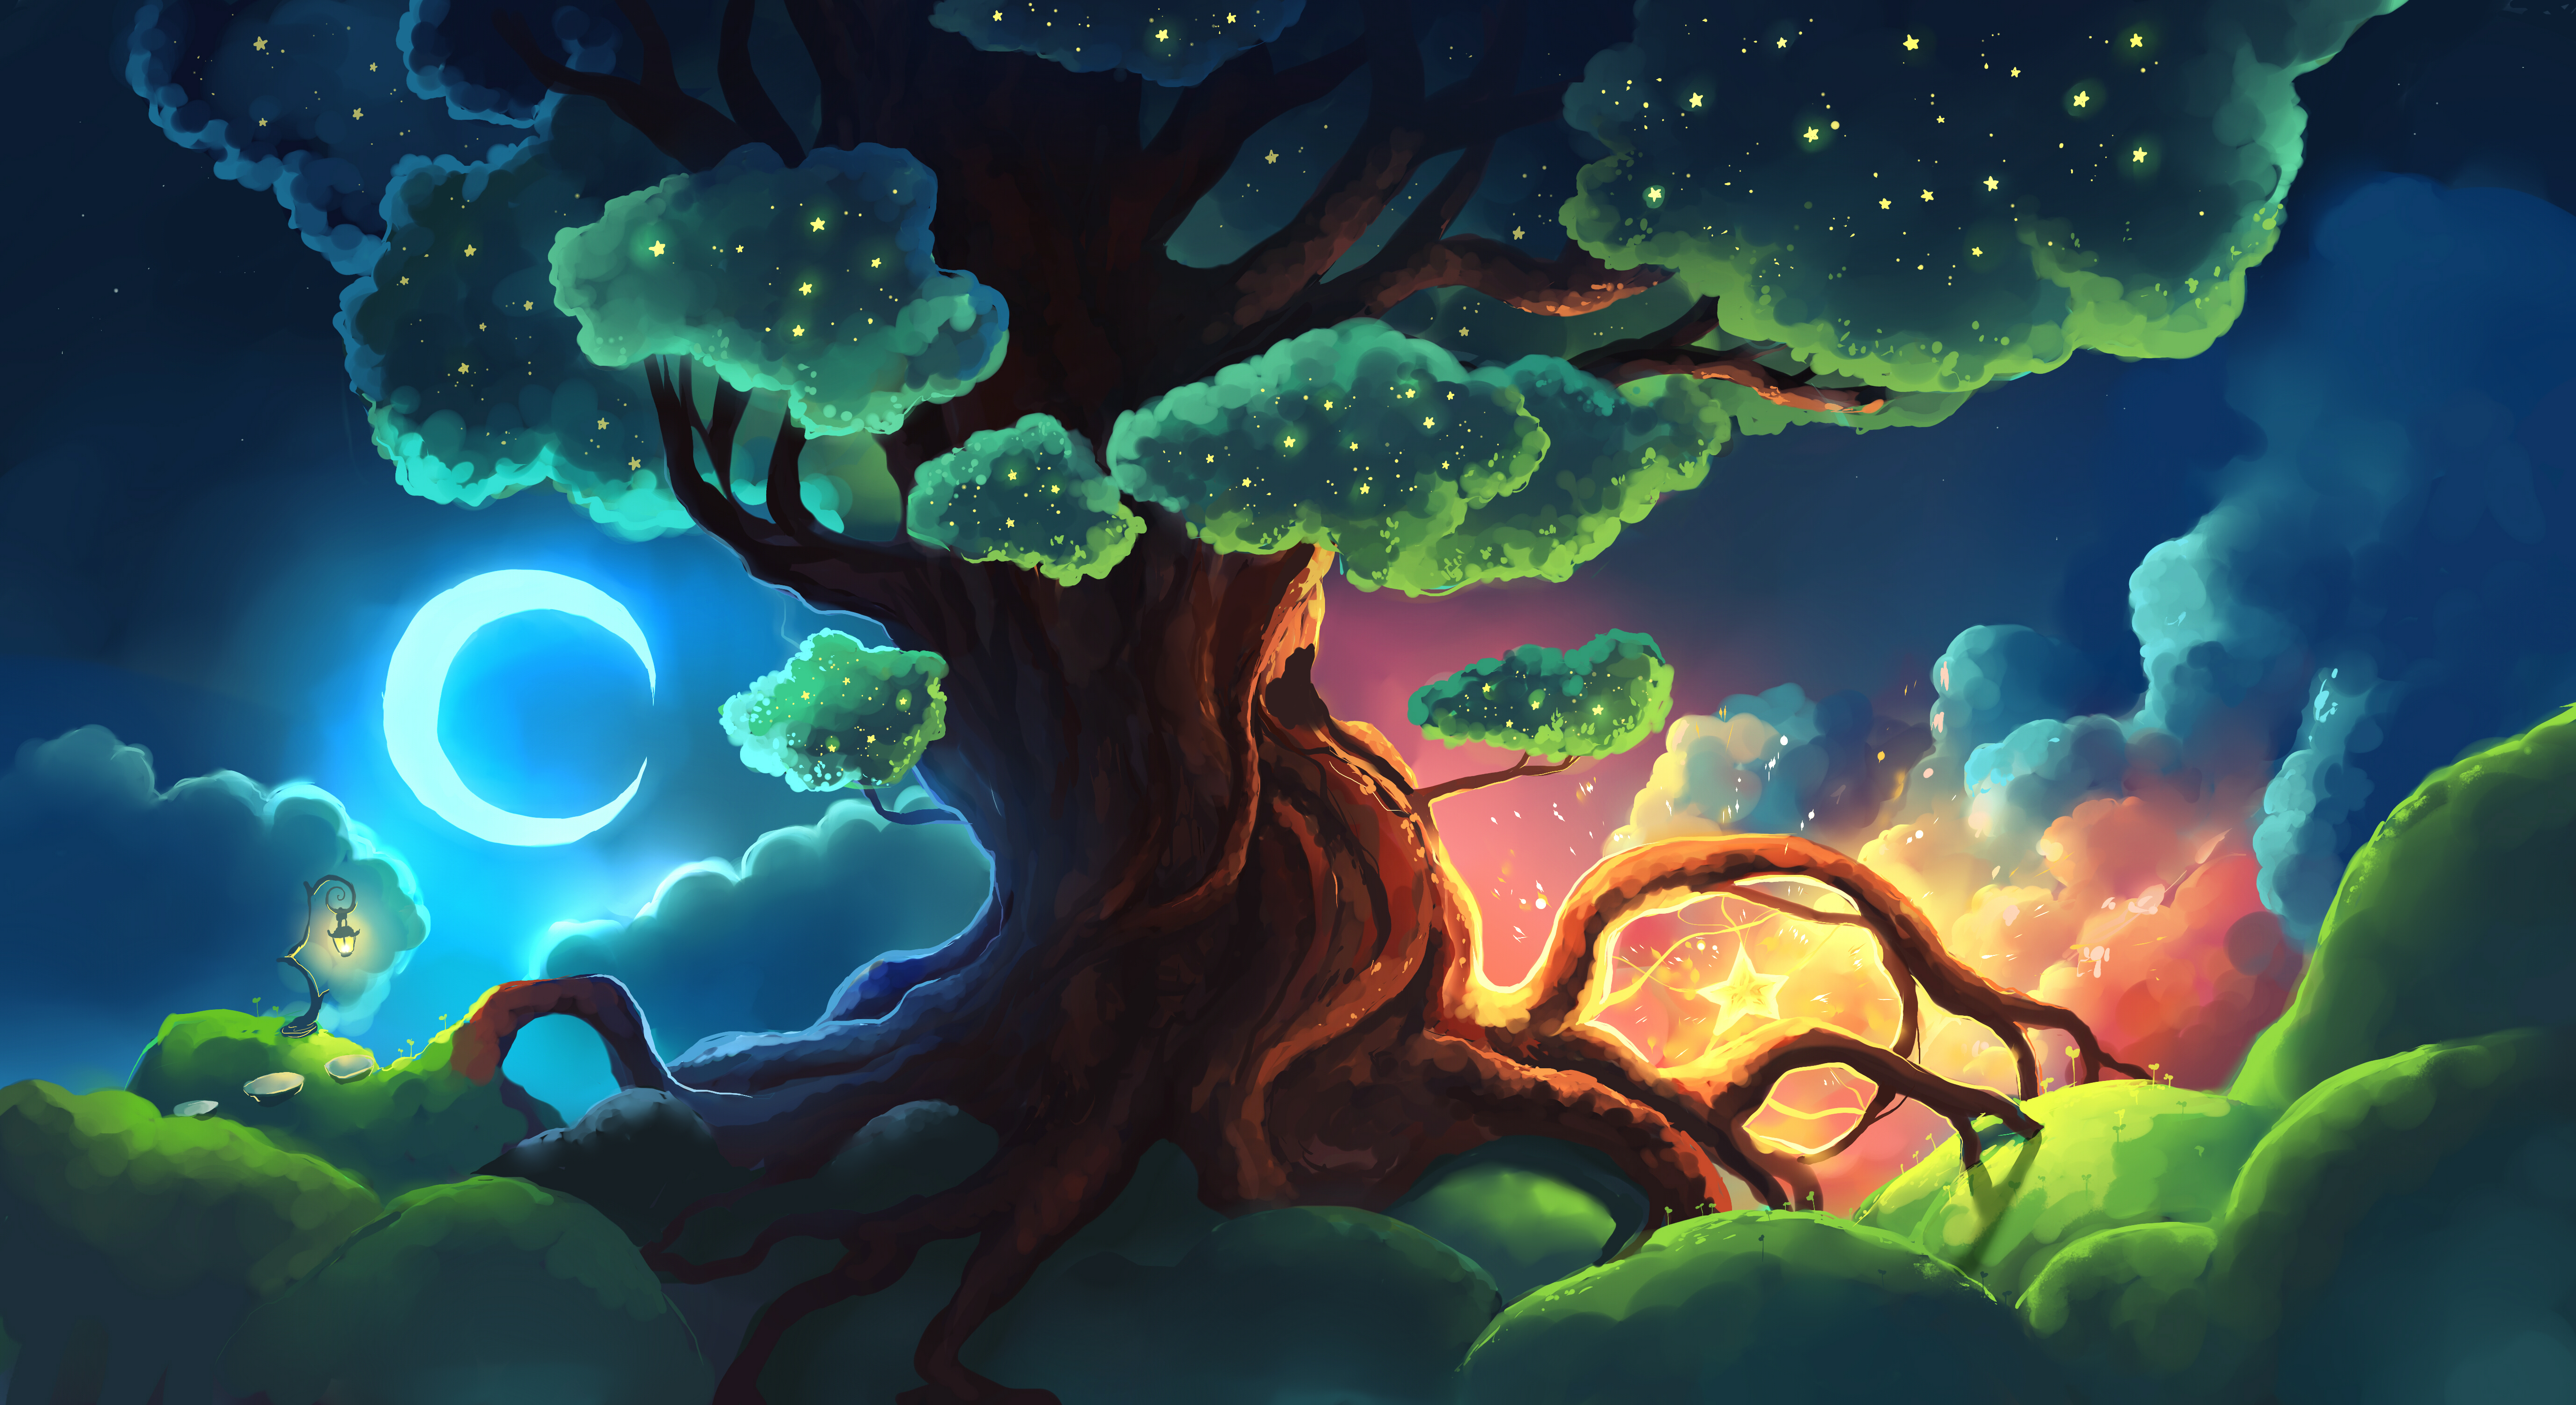 New Lock Screen Wallpapers art, glow, stars, night, wood, tree